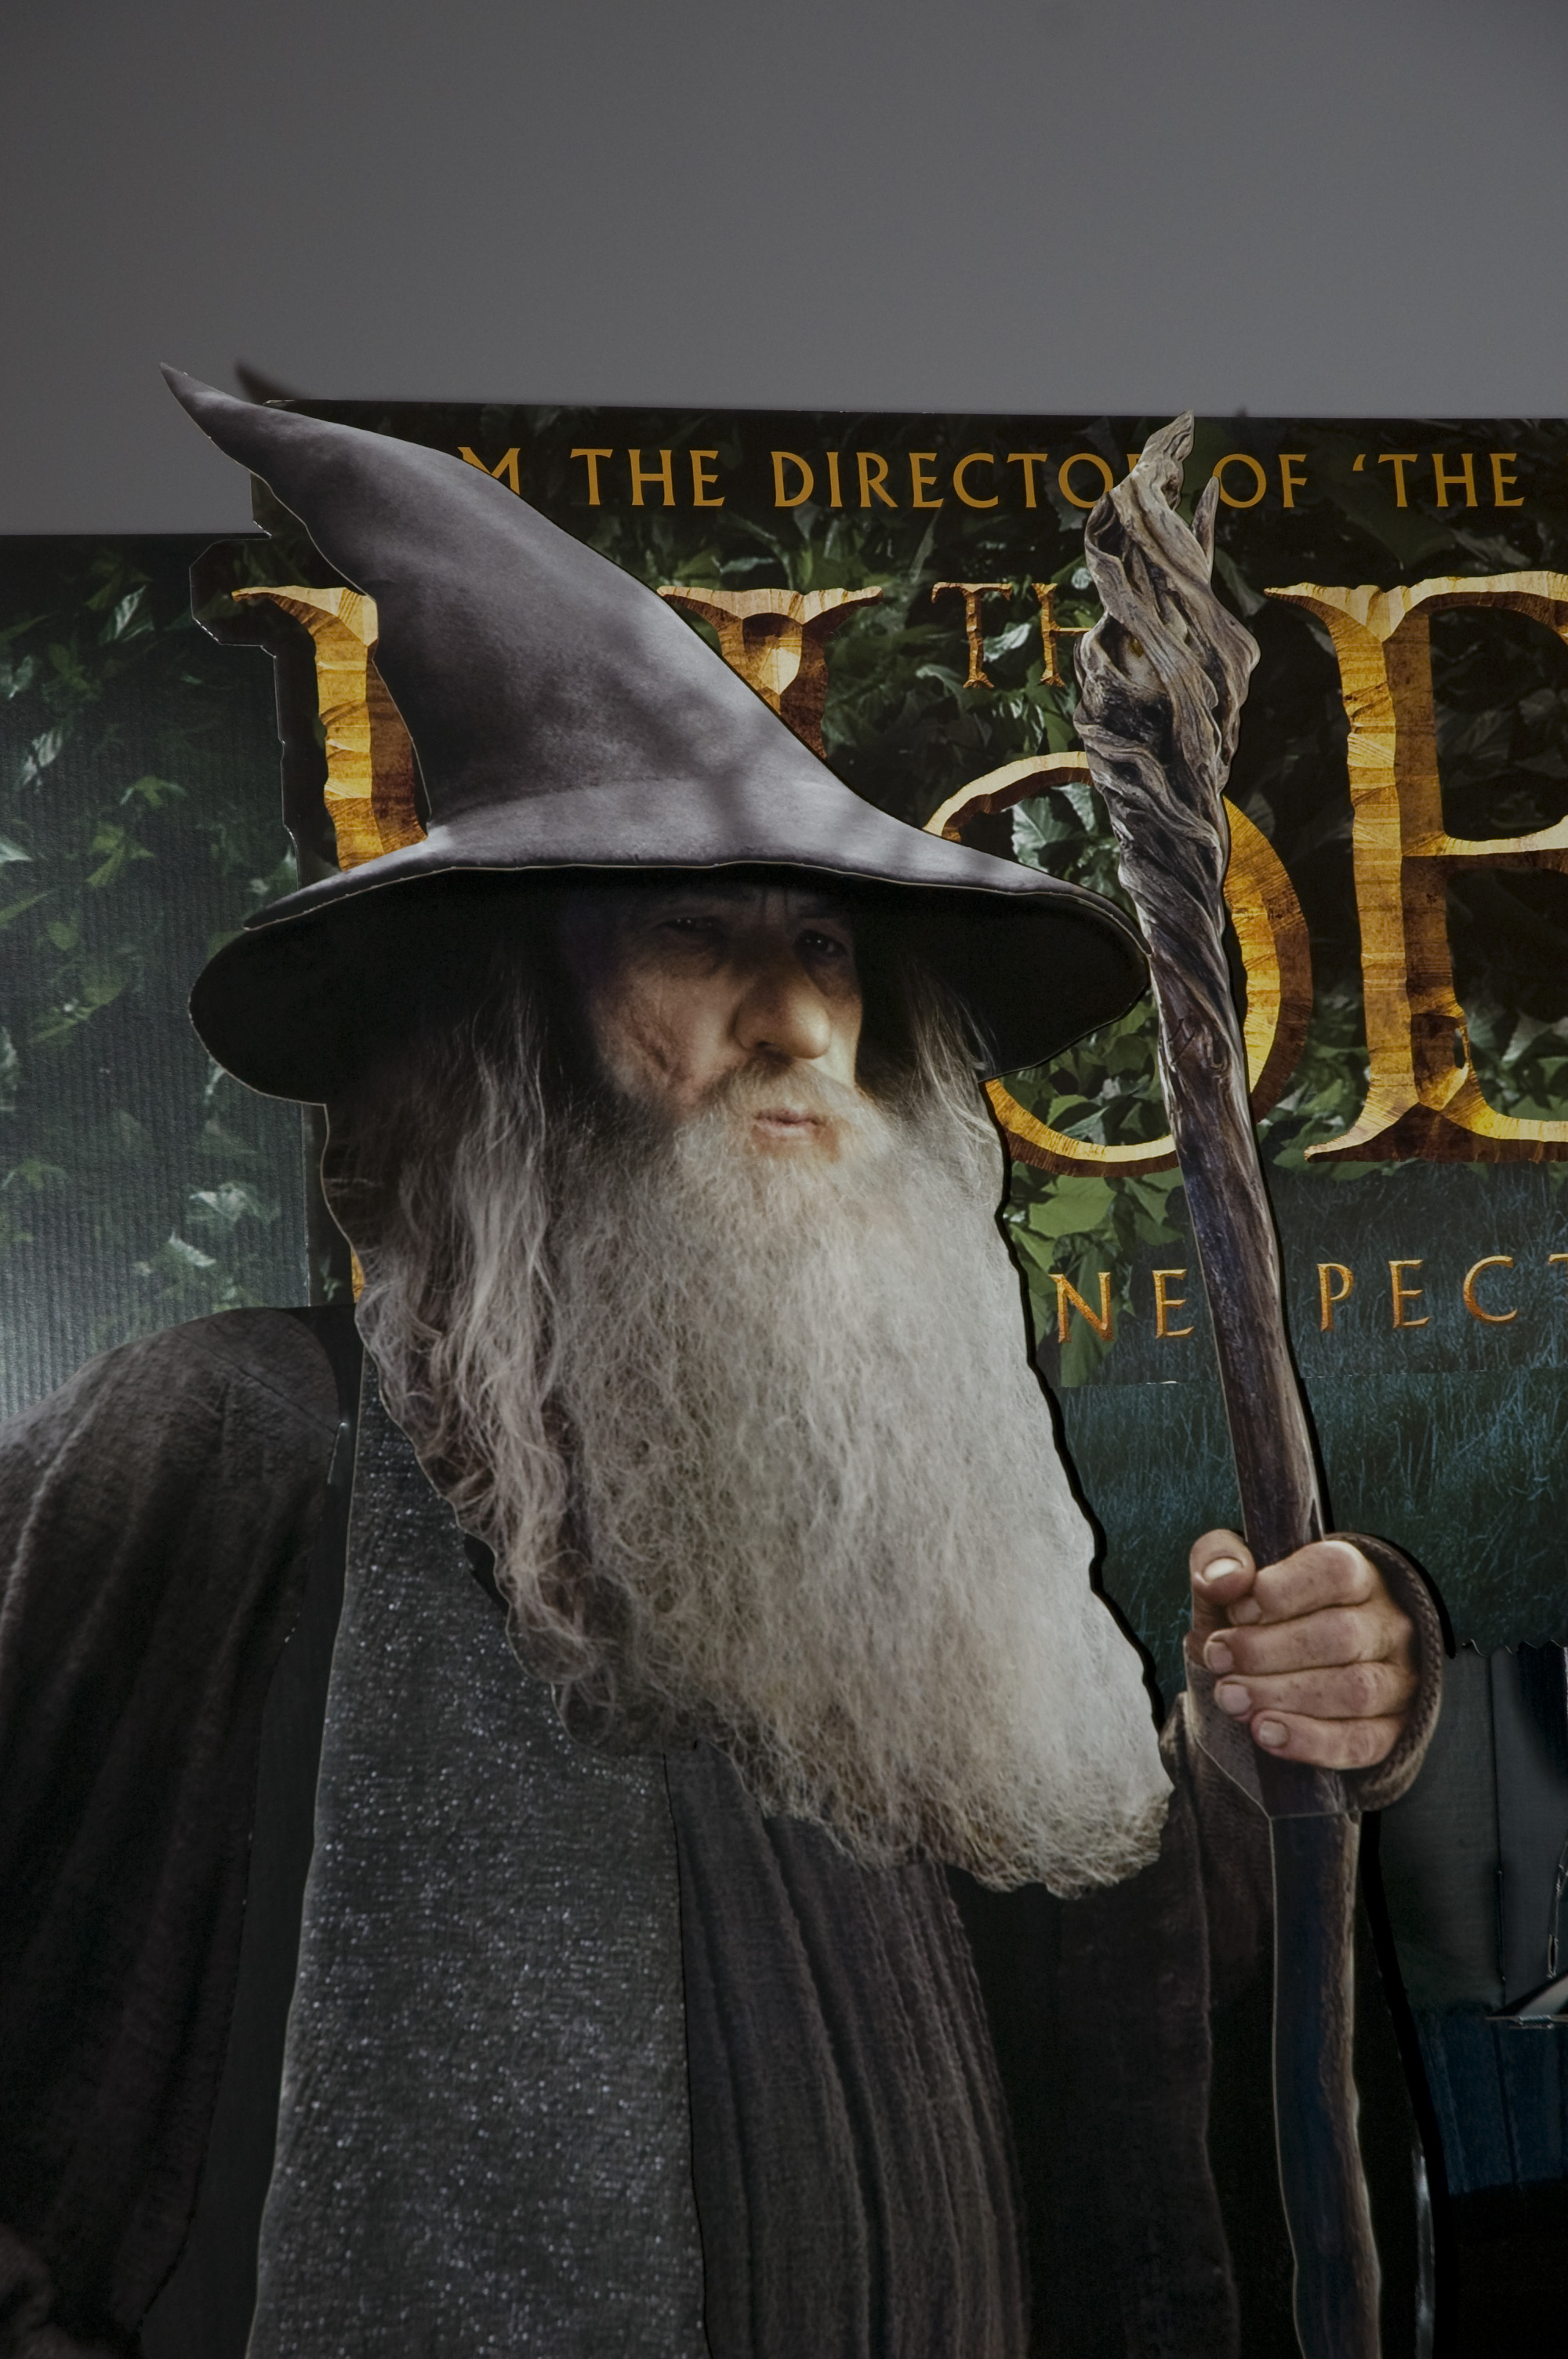 Reklam på biopalatset för filmen "the Hobbit"